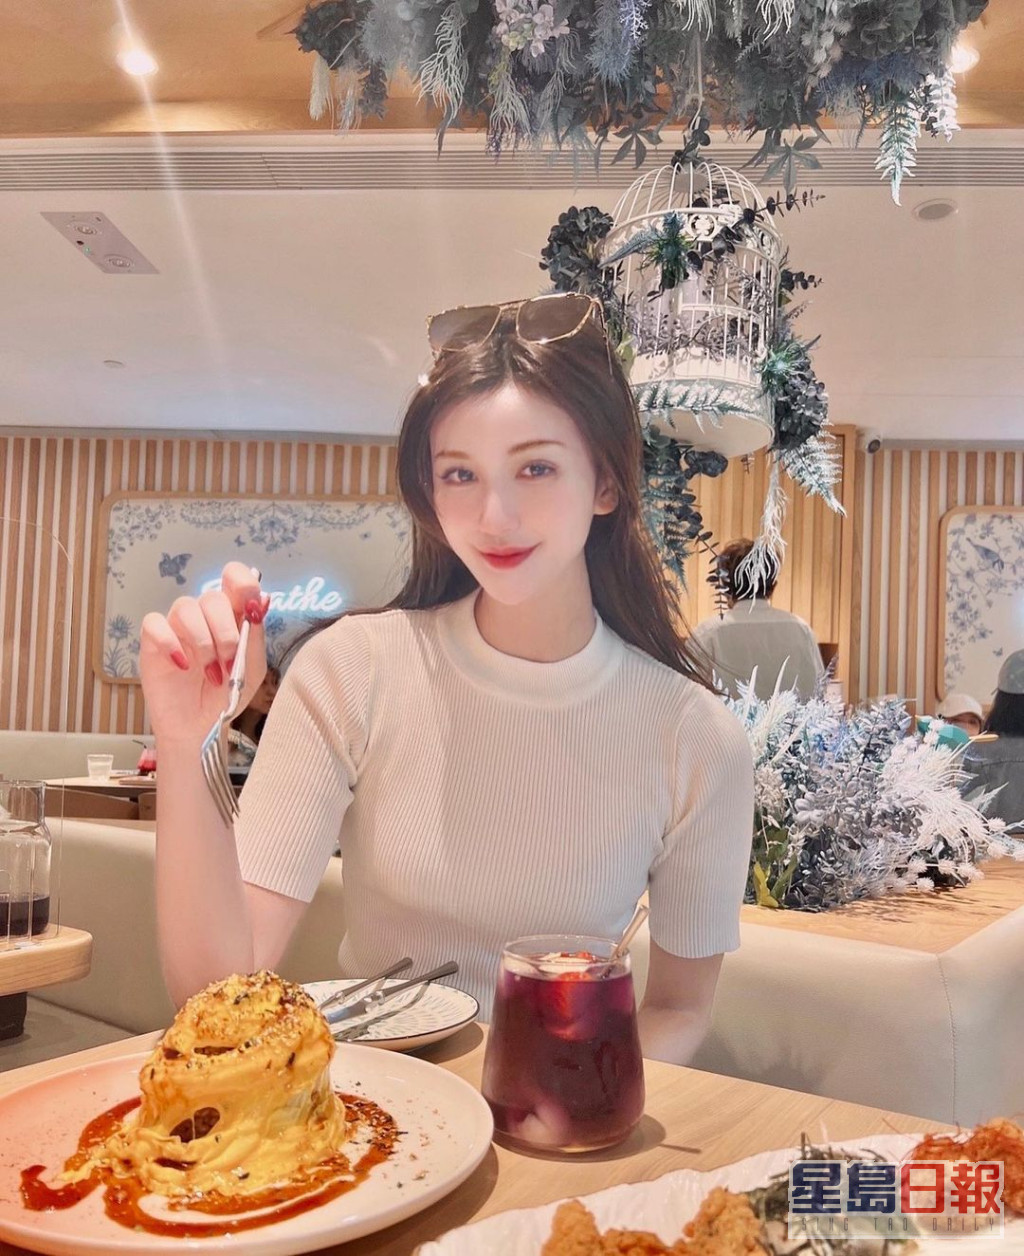 吴玥彤的社交网有不少饮饮食食的照片。